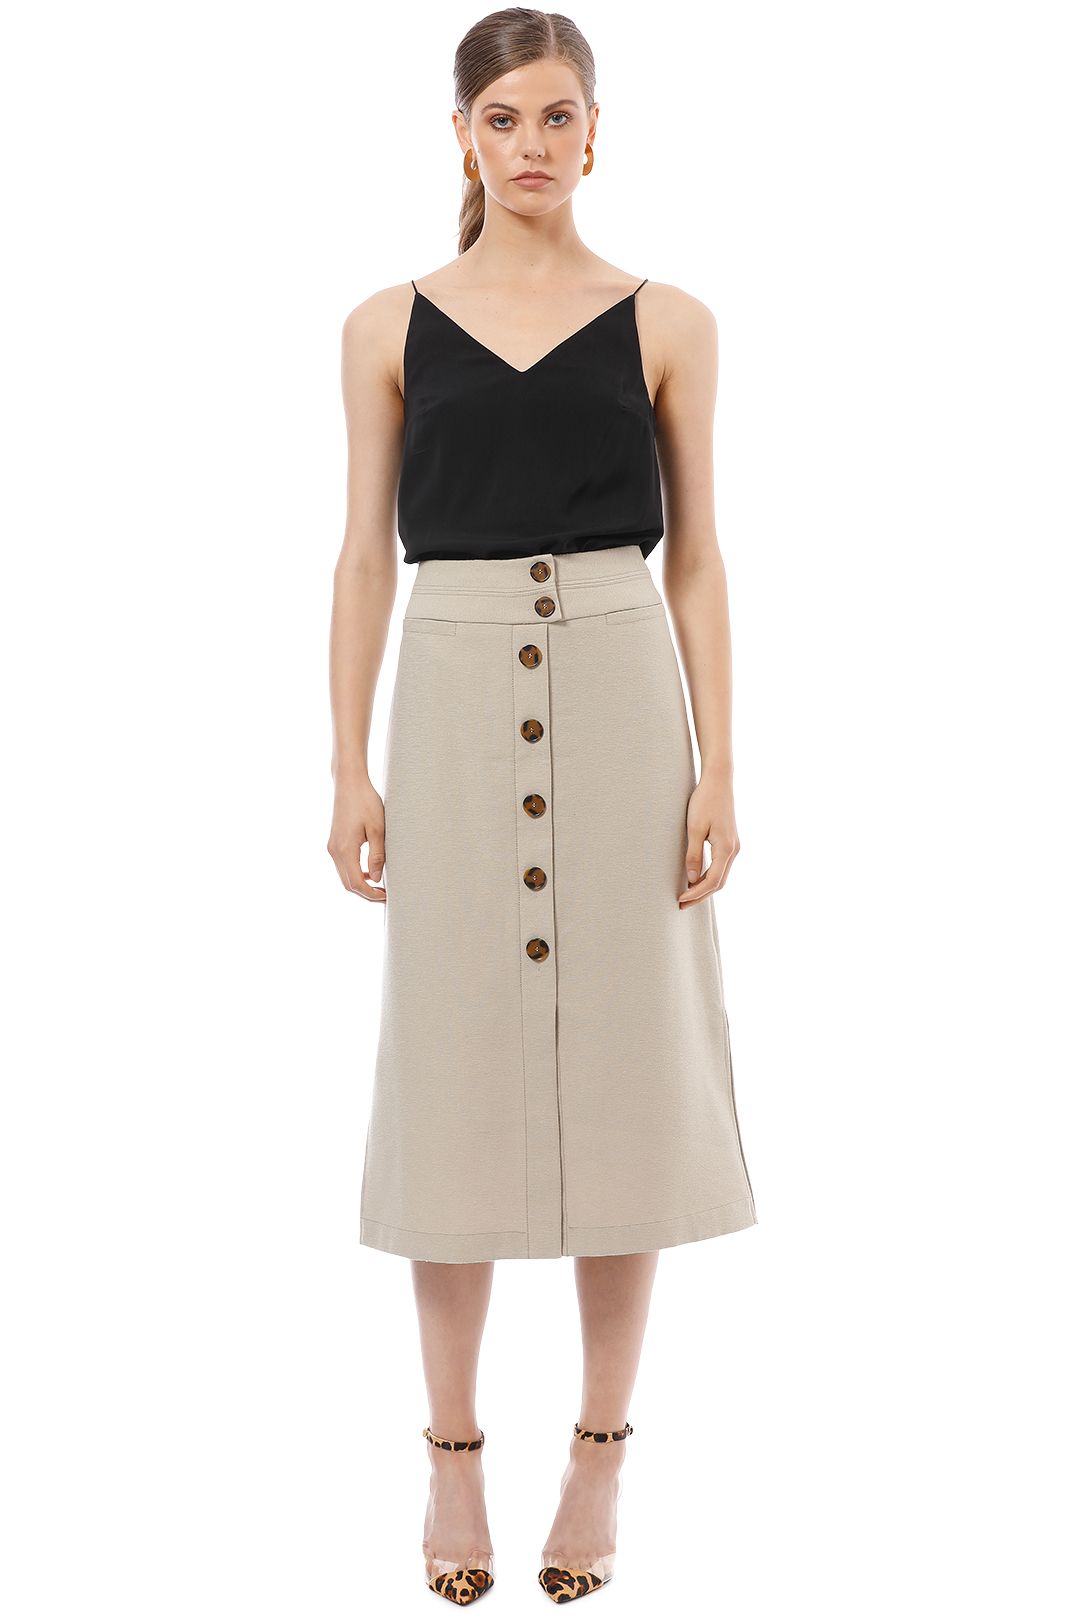 Veronika Maine - Textured Button Up Skirt - Beige - Front